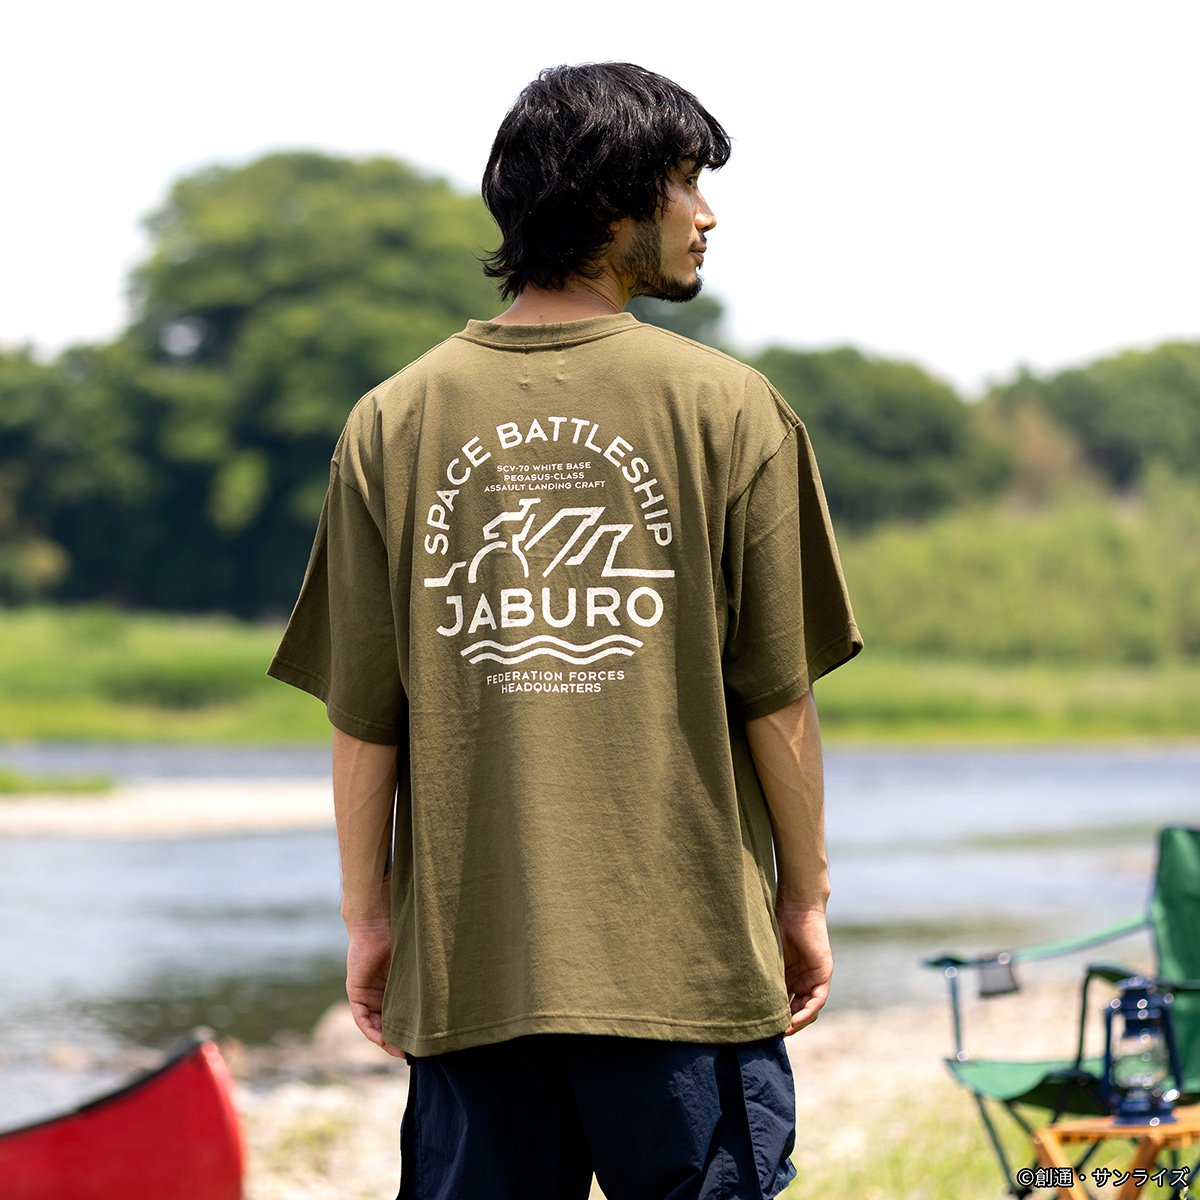 『機動戦士ガンダム』×アウトドアテイストの 新ブランド“JABURO” 第1弾コレクションを展開